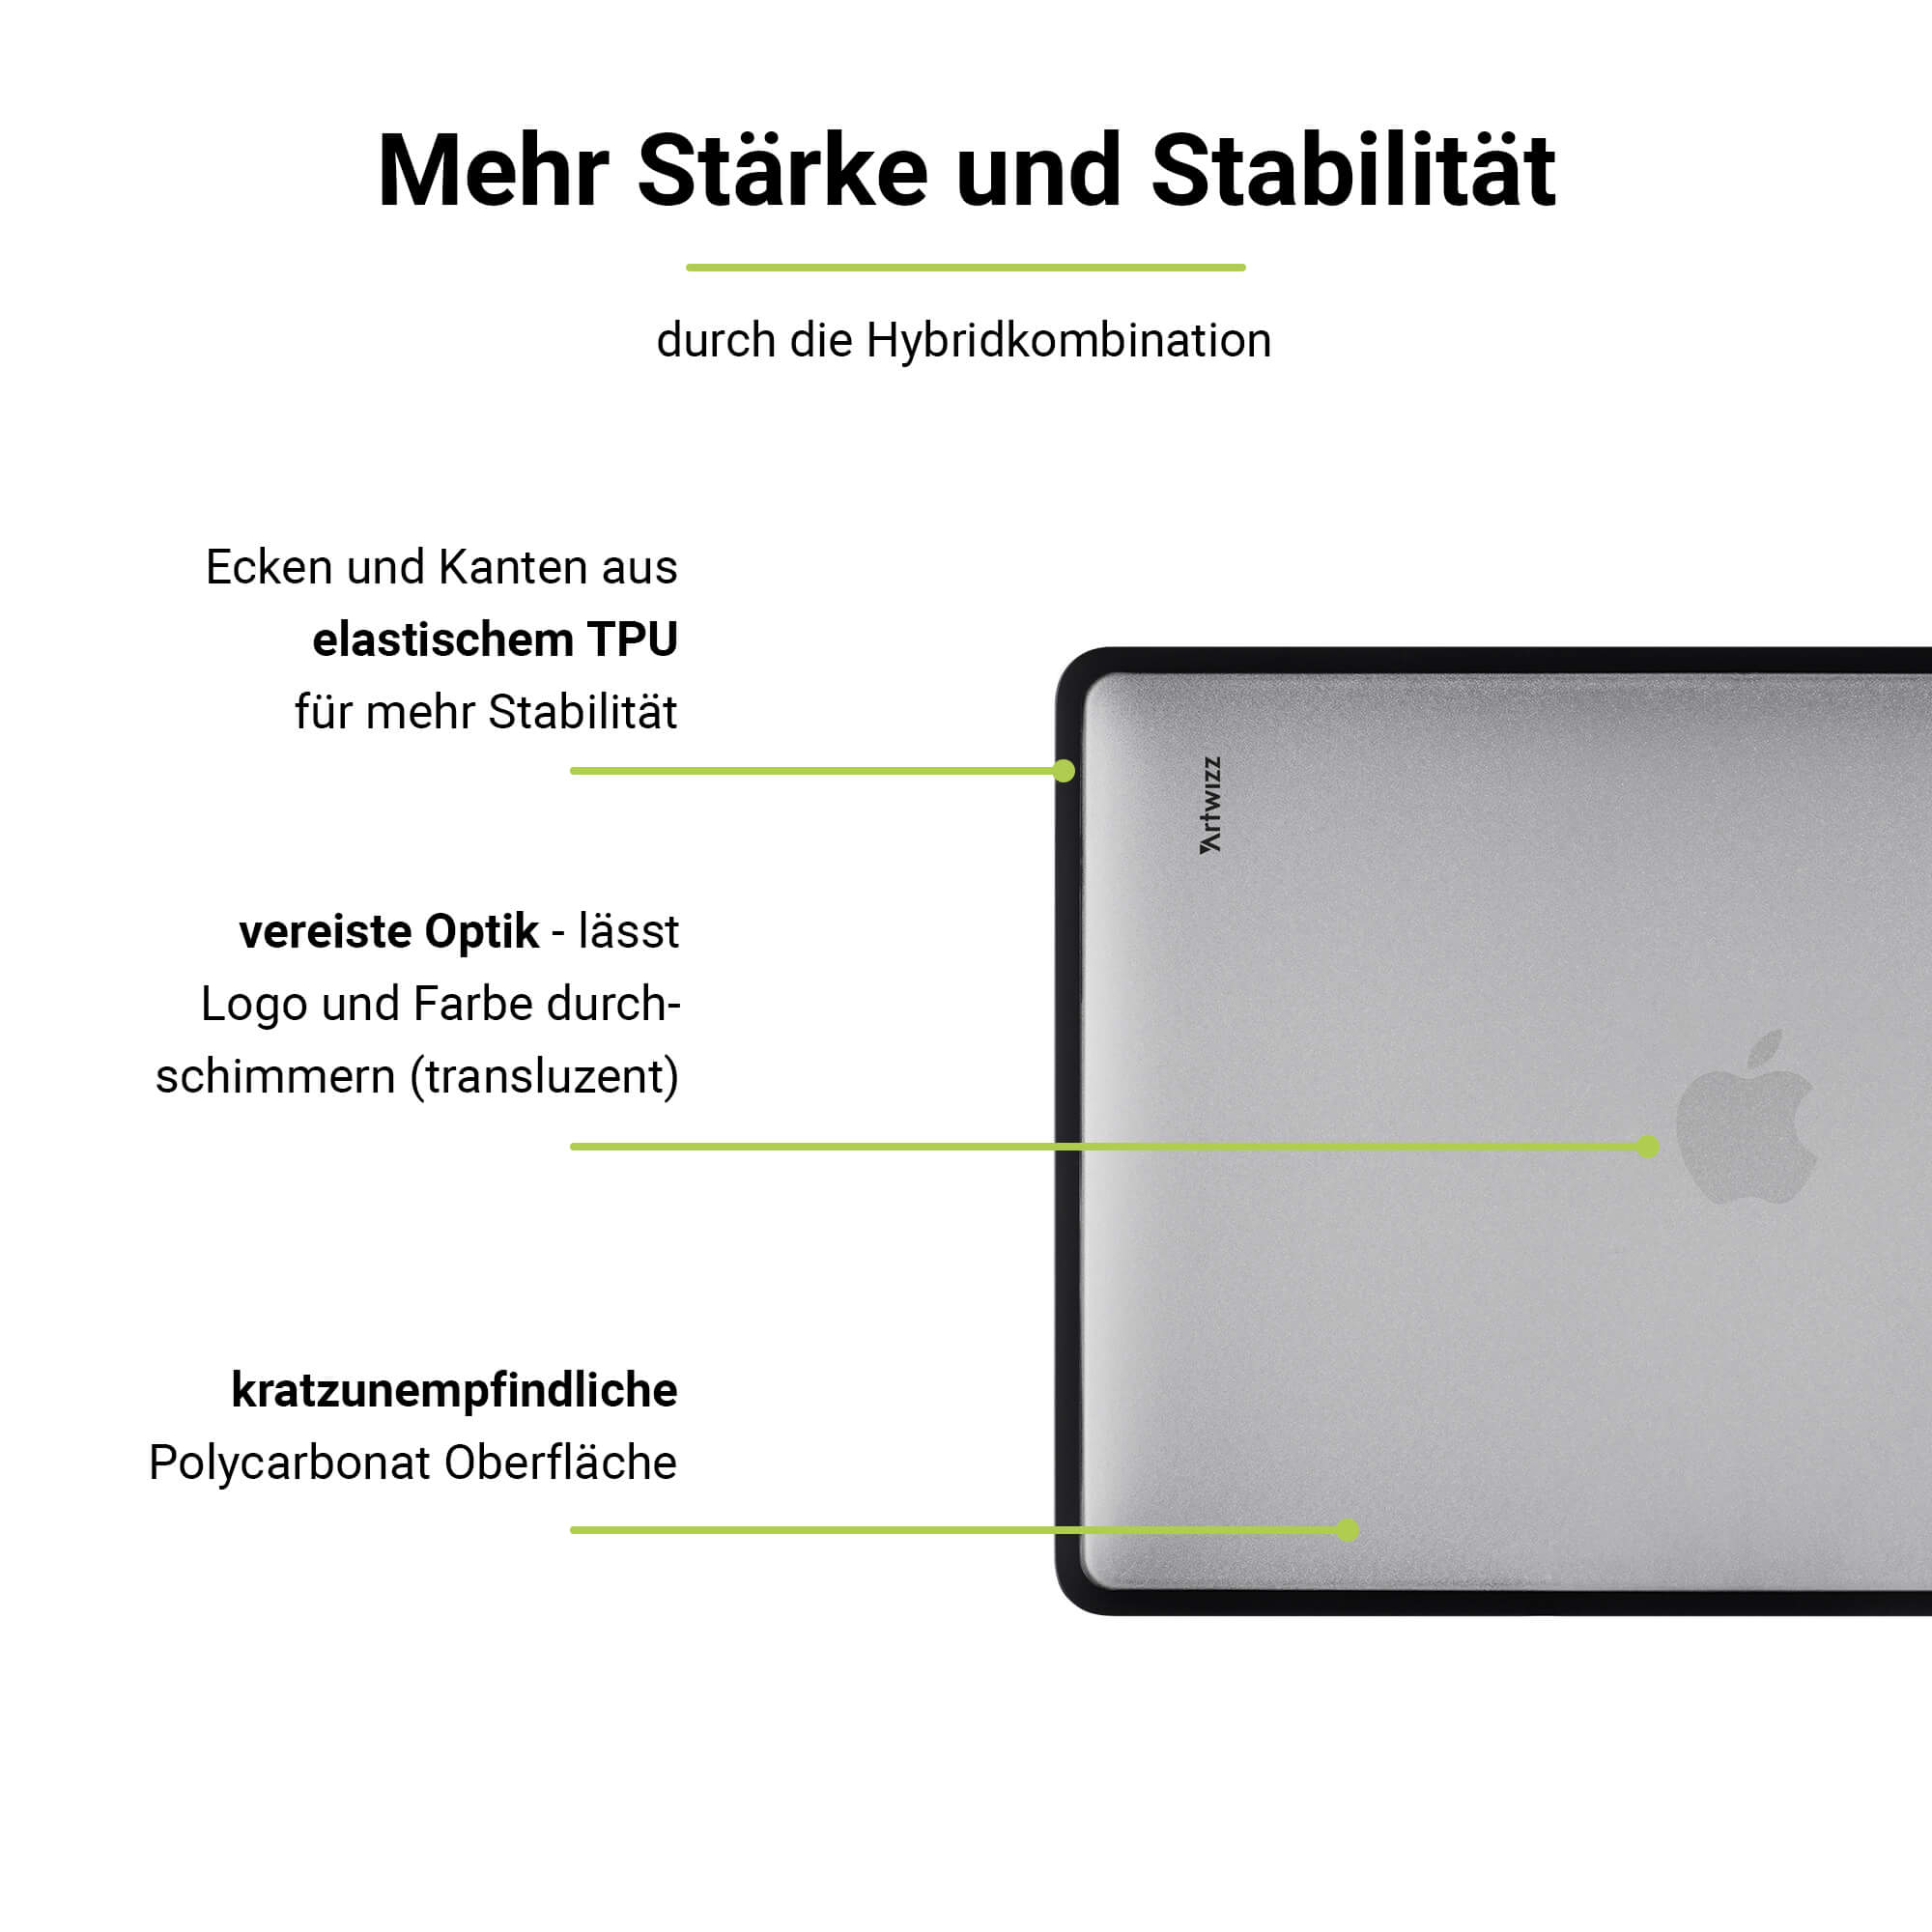 ARTWIZZ IcedClip MacBook Bumper Pro Apple für Kunststoff, Schwarz Notebook Transluzent 14 Zoll (M1/M2/M3) Hülle 